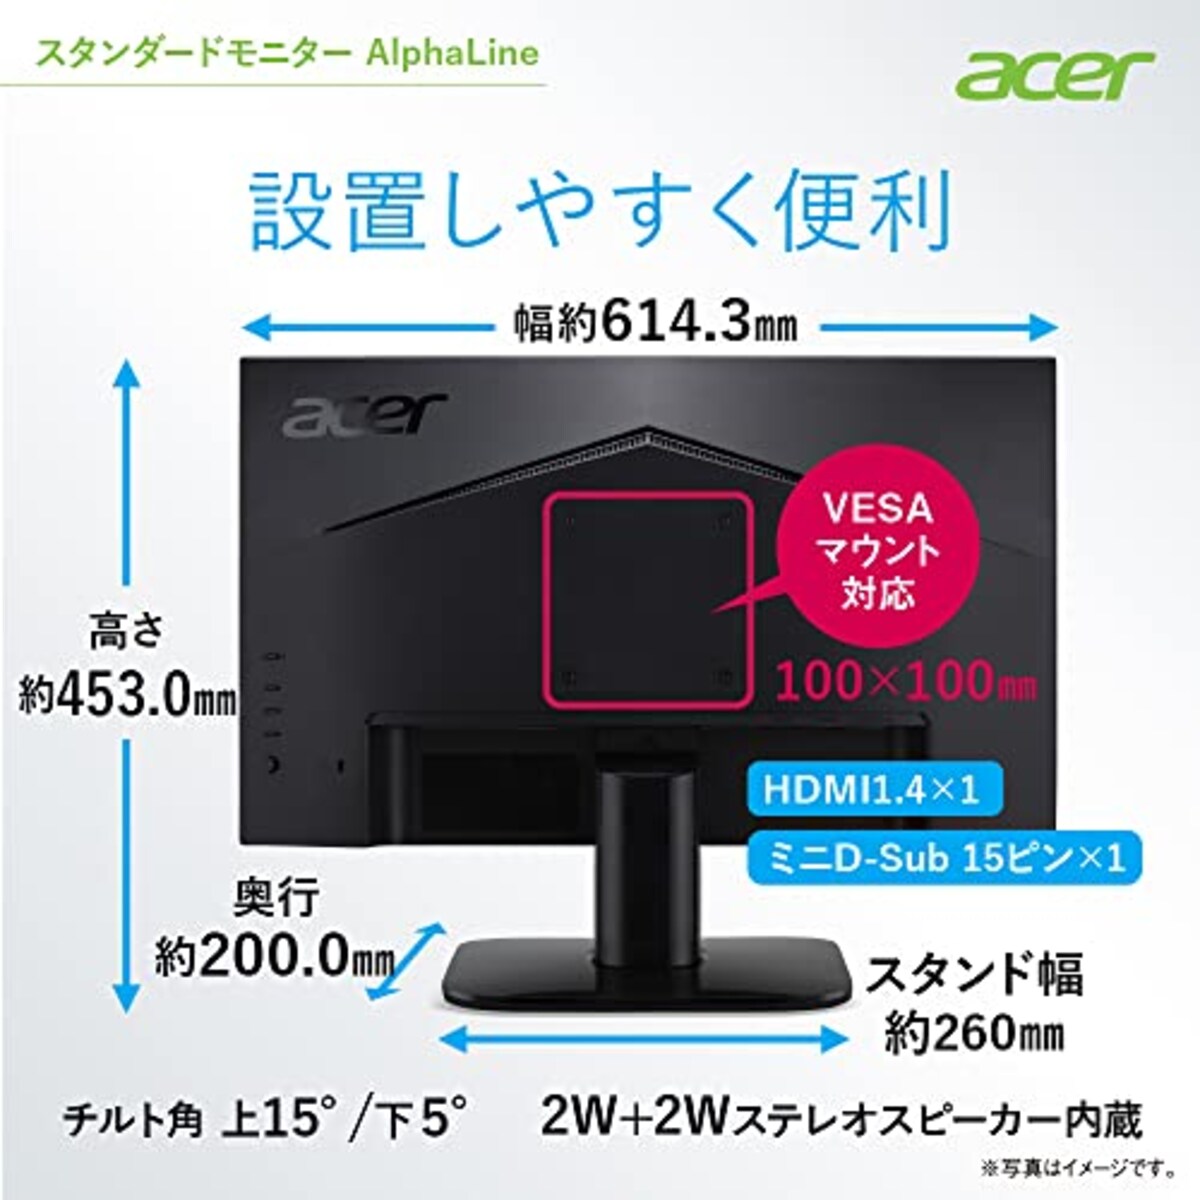  日本エイサー 【Amazon.co.jp限定】Acer モニター 27インチ フルHD VA 非光沢100Hz 1ms HDMI ミニD-Sub15 VESAマウント対応 スピーカー内蔵 AMD FreeSync KA272Hbmix画像7 